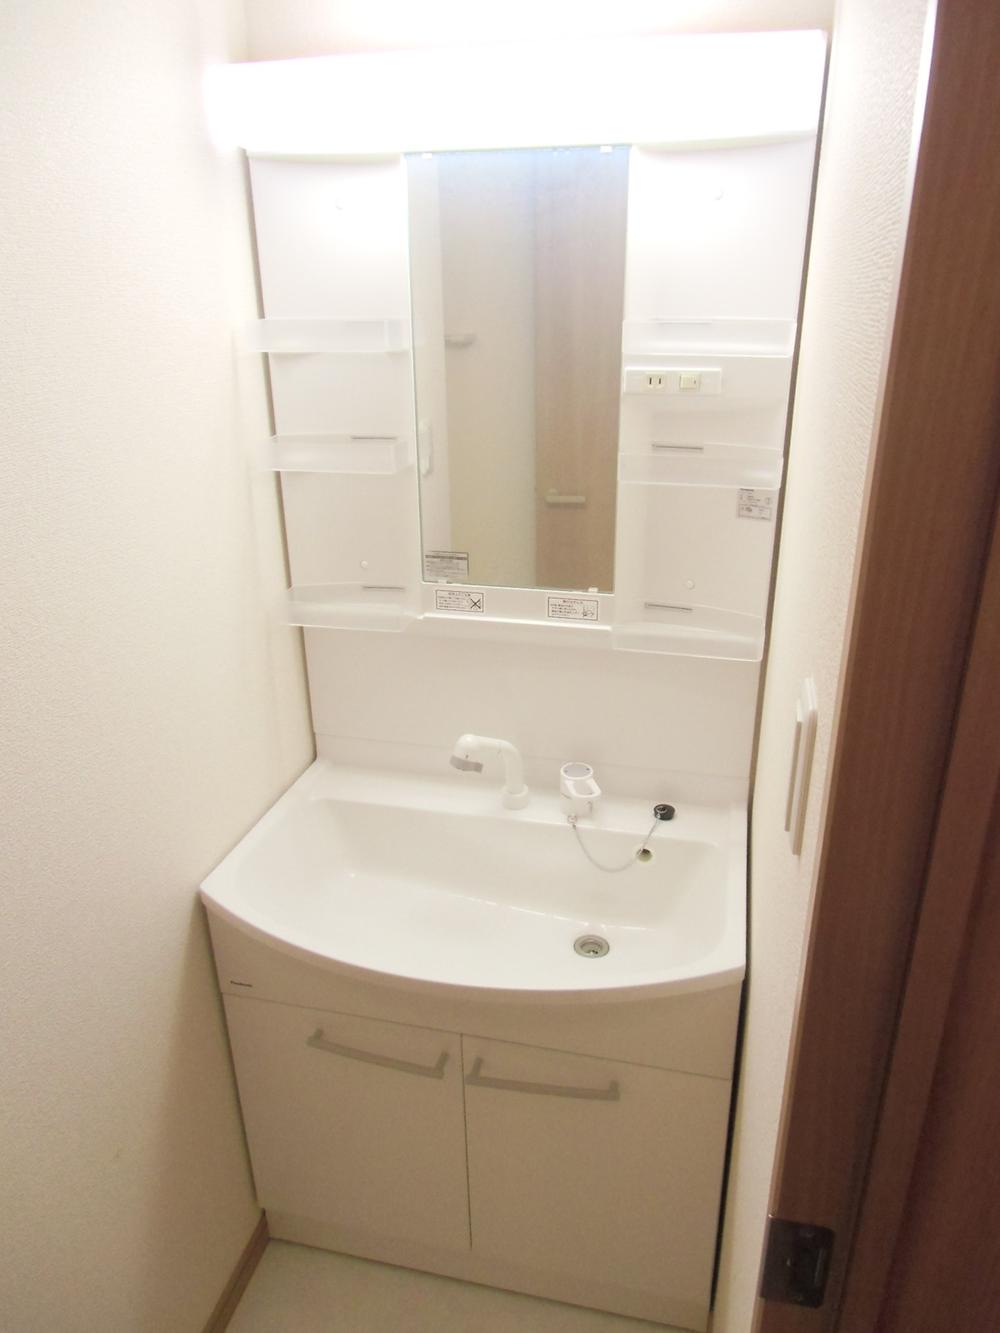 Wash basin, toilet. Hand shower basin cabinet